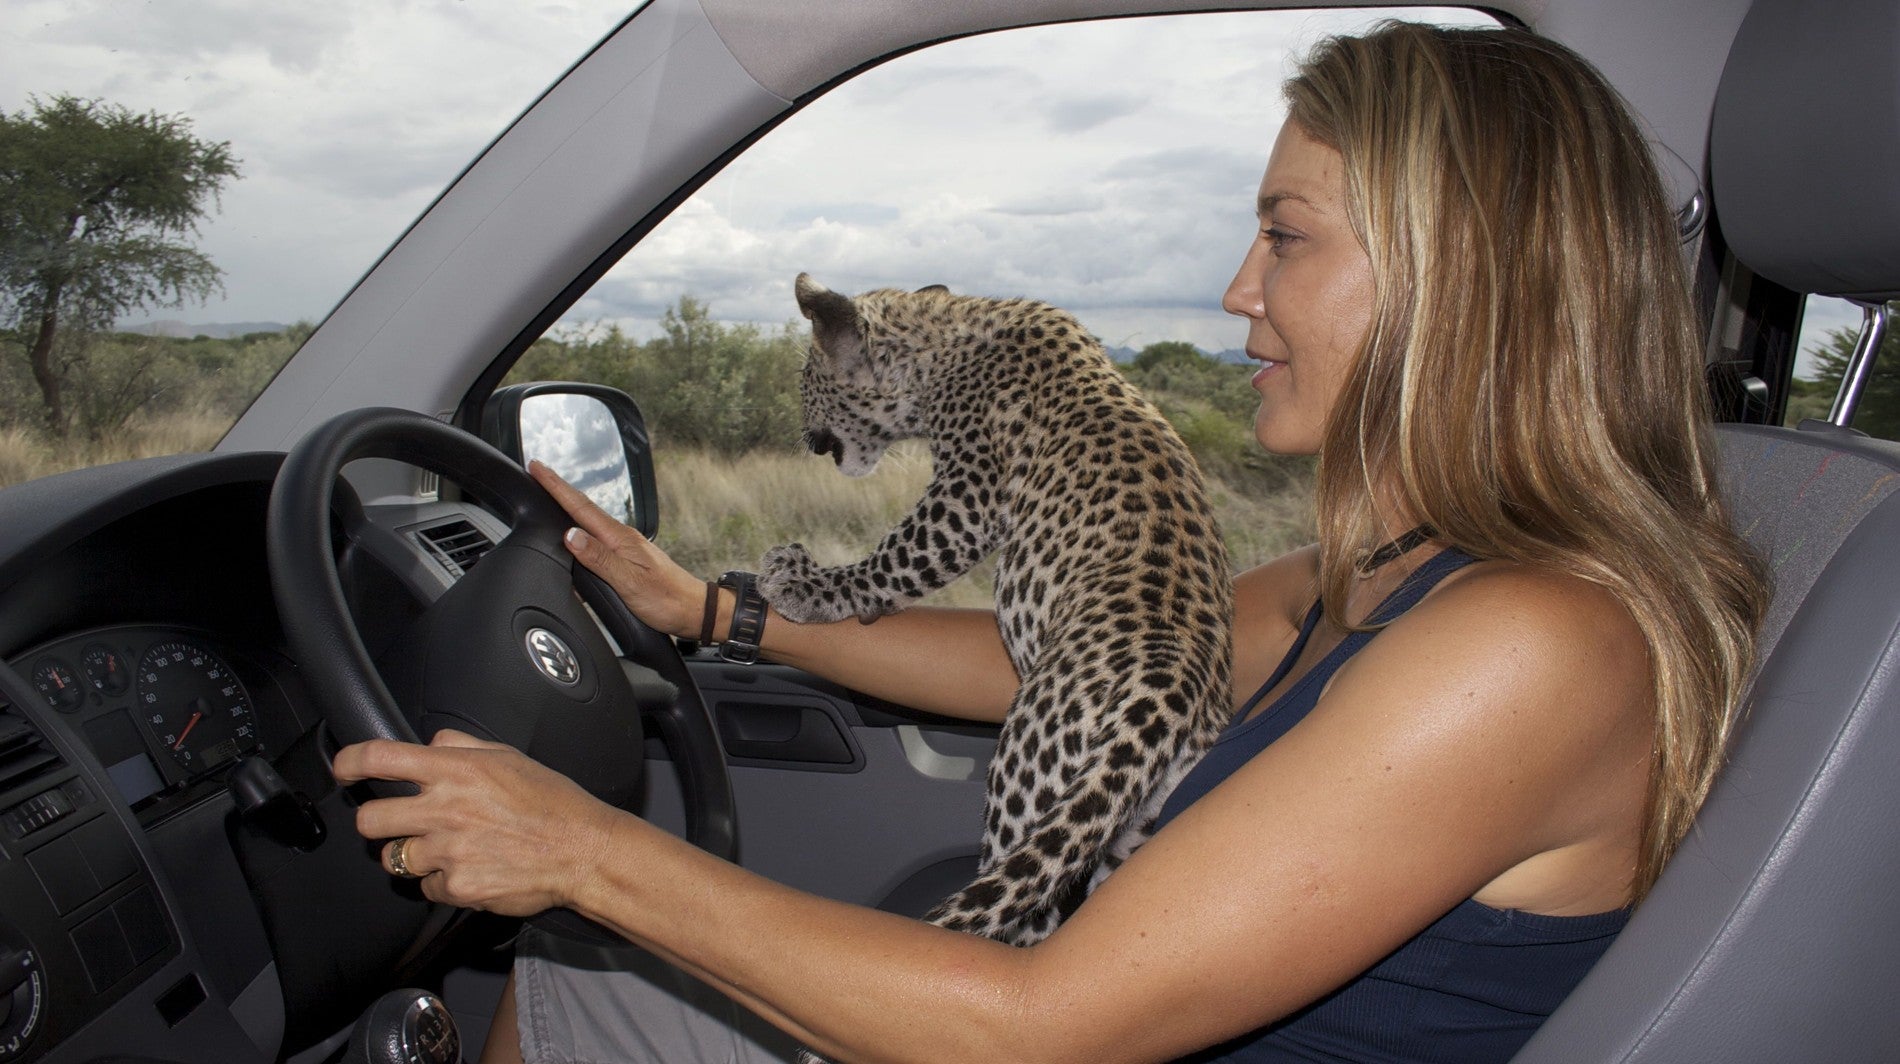 Cheetah Rescue